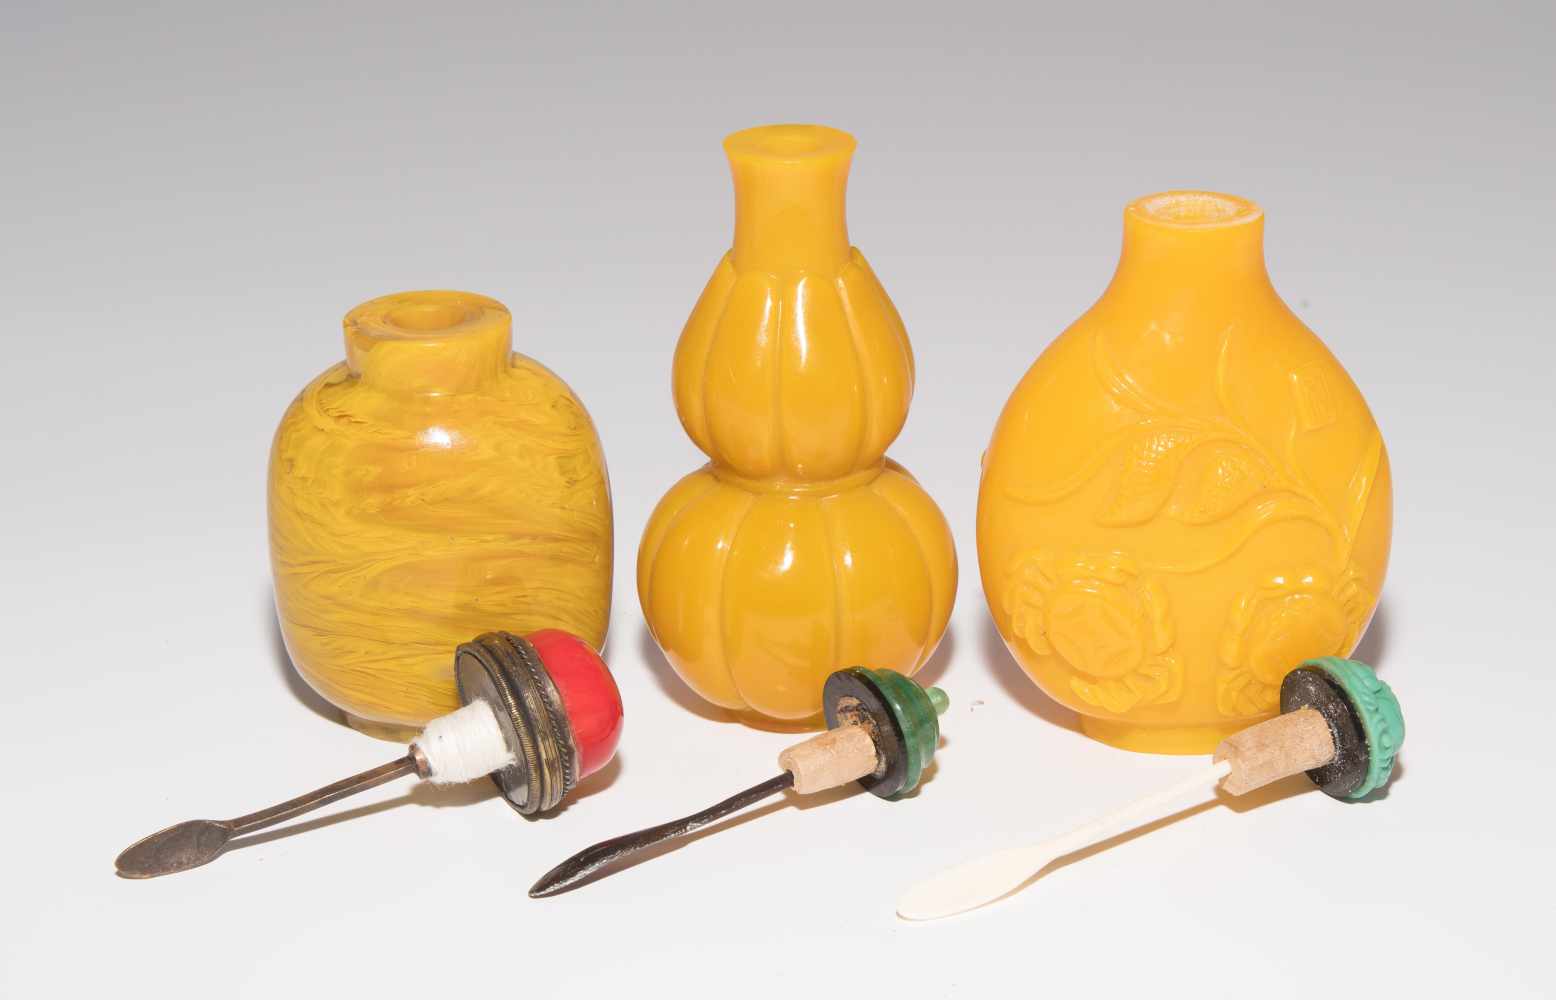 7 Glas Snuff BottlesChina. Halbtransparentes bis opakes Glas in verschiedenen Gelbtönen. H 5–8 cm. - Image 19 of 21